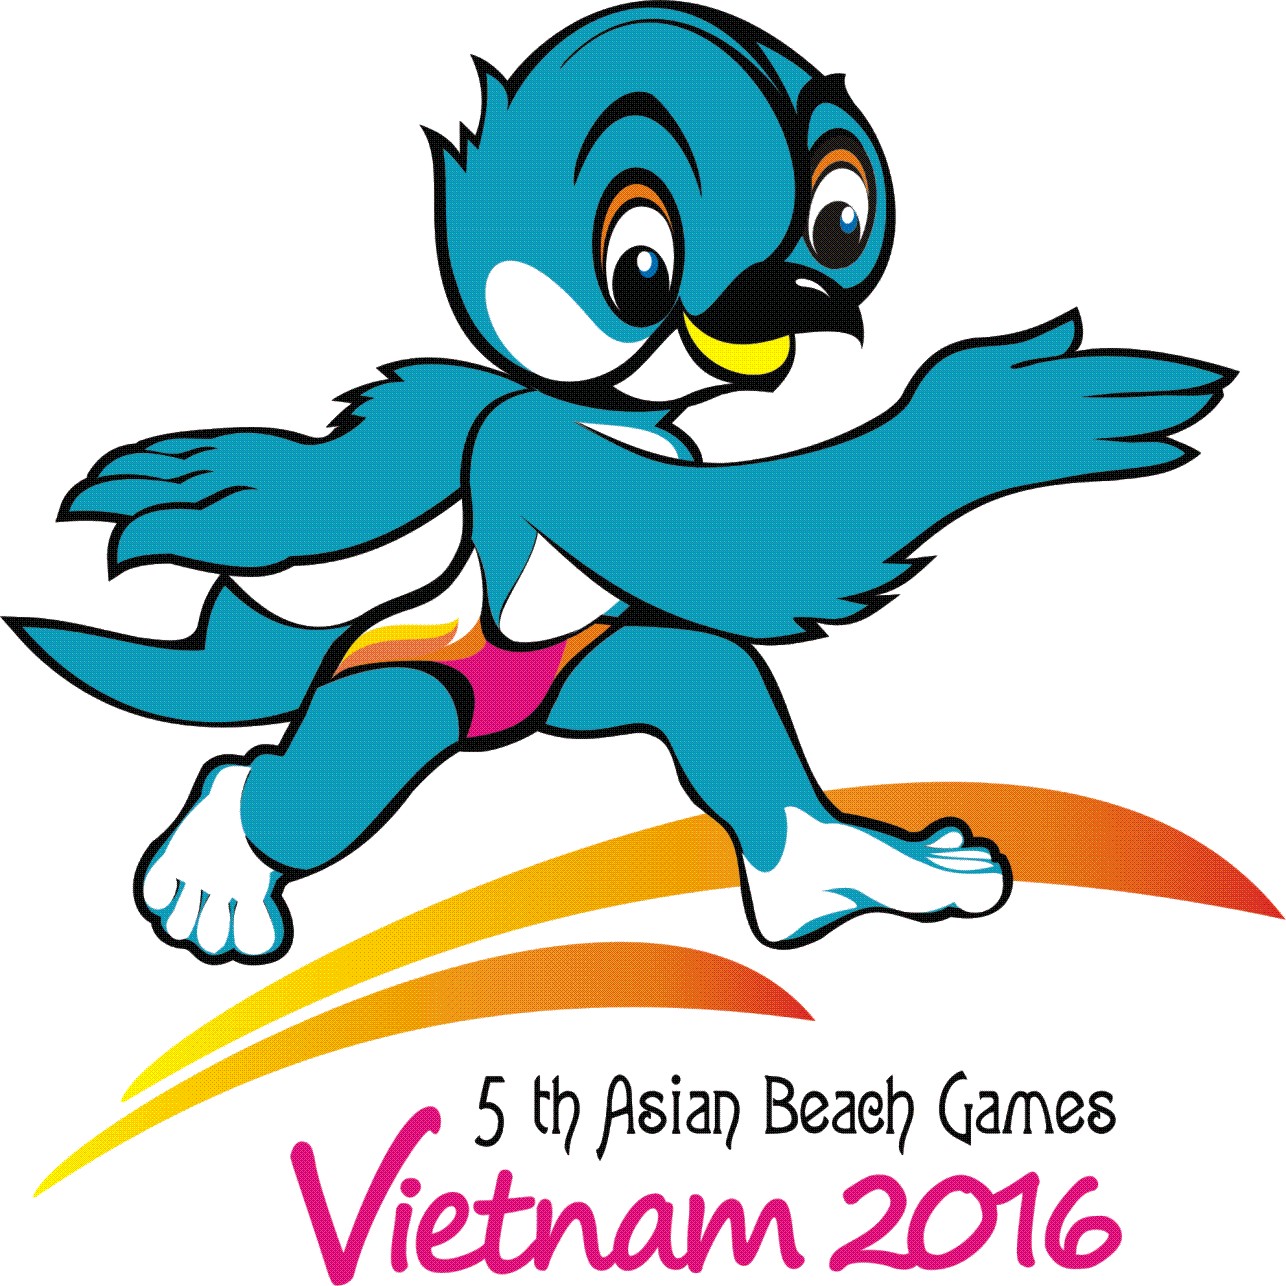 Linh vật (Mascot) đoạt Giải Khuyến khích cuộc thi thiết kế Linh Vật Đại hội Thể thao bãi biển Châu Á - Việt Nam 2016